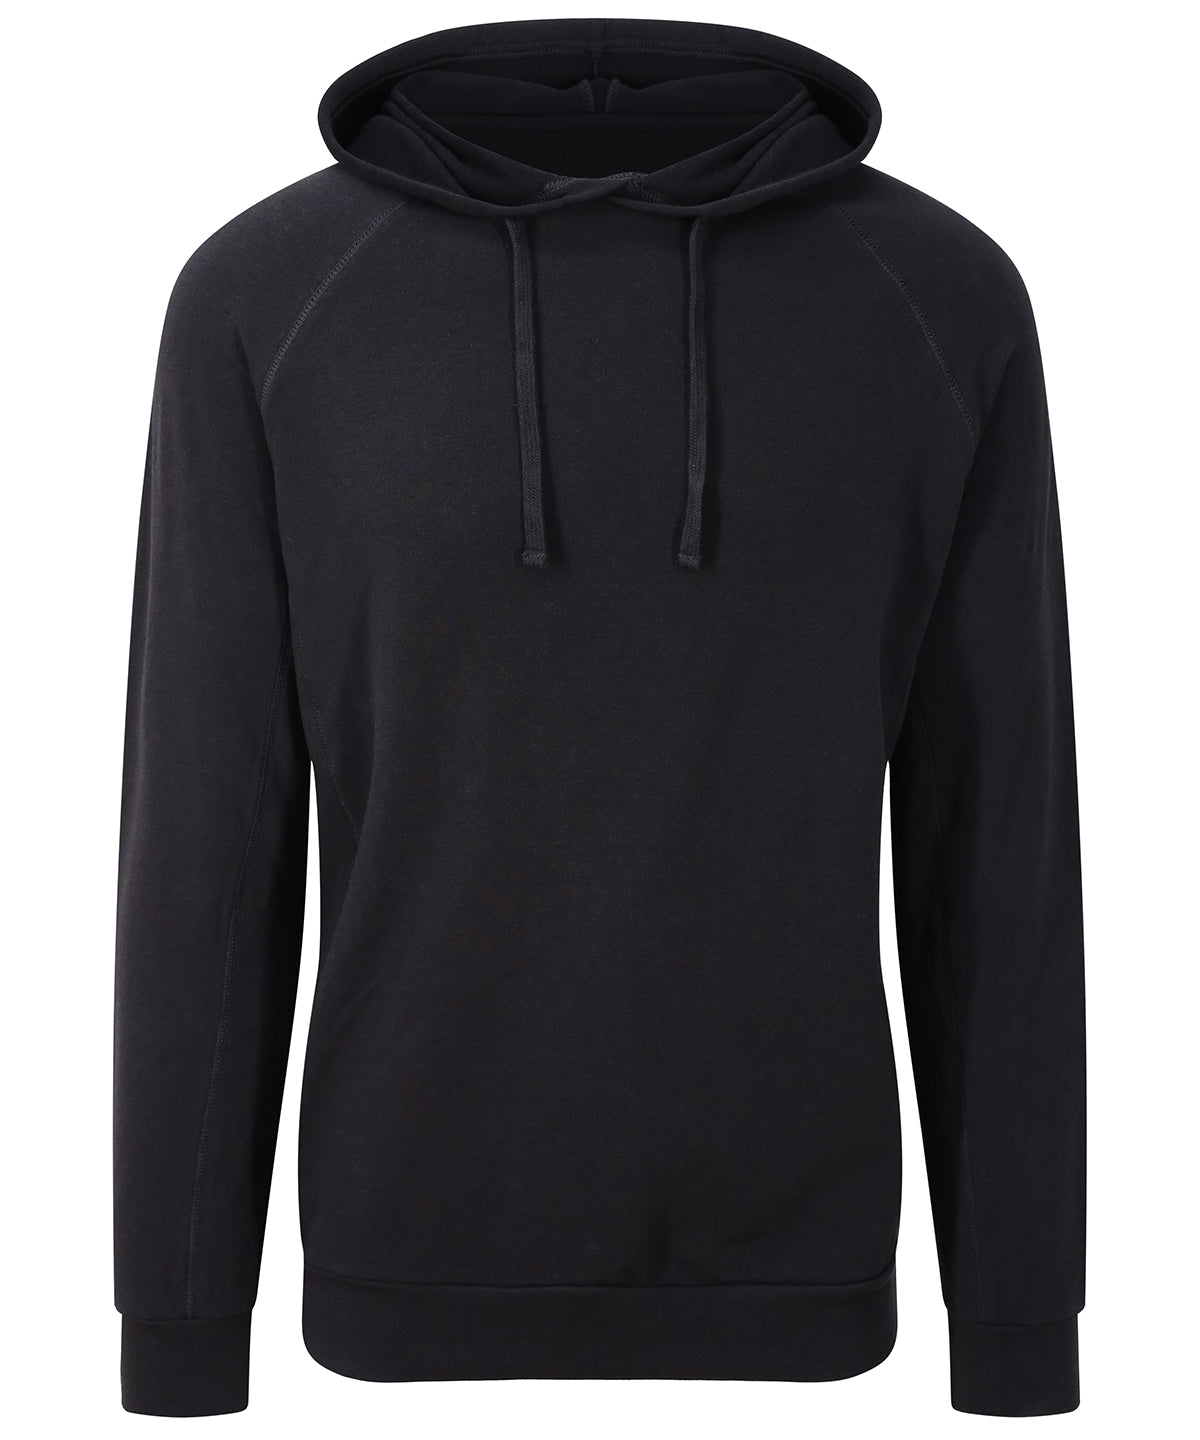 Personalised Hoodies - Navy AWDis Just Cool Cool fitness hoodie